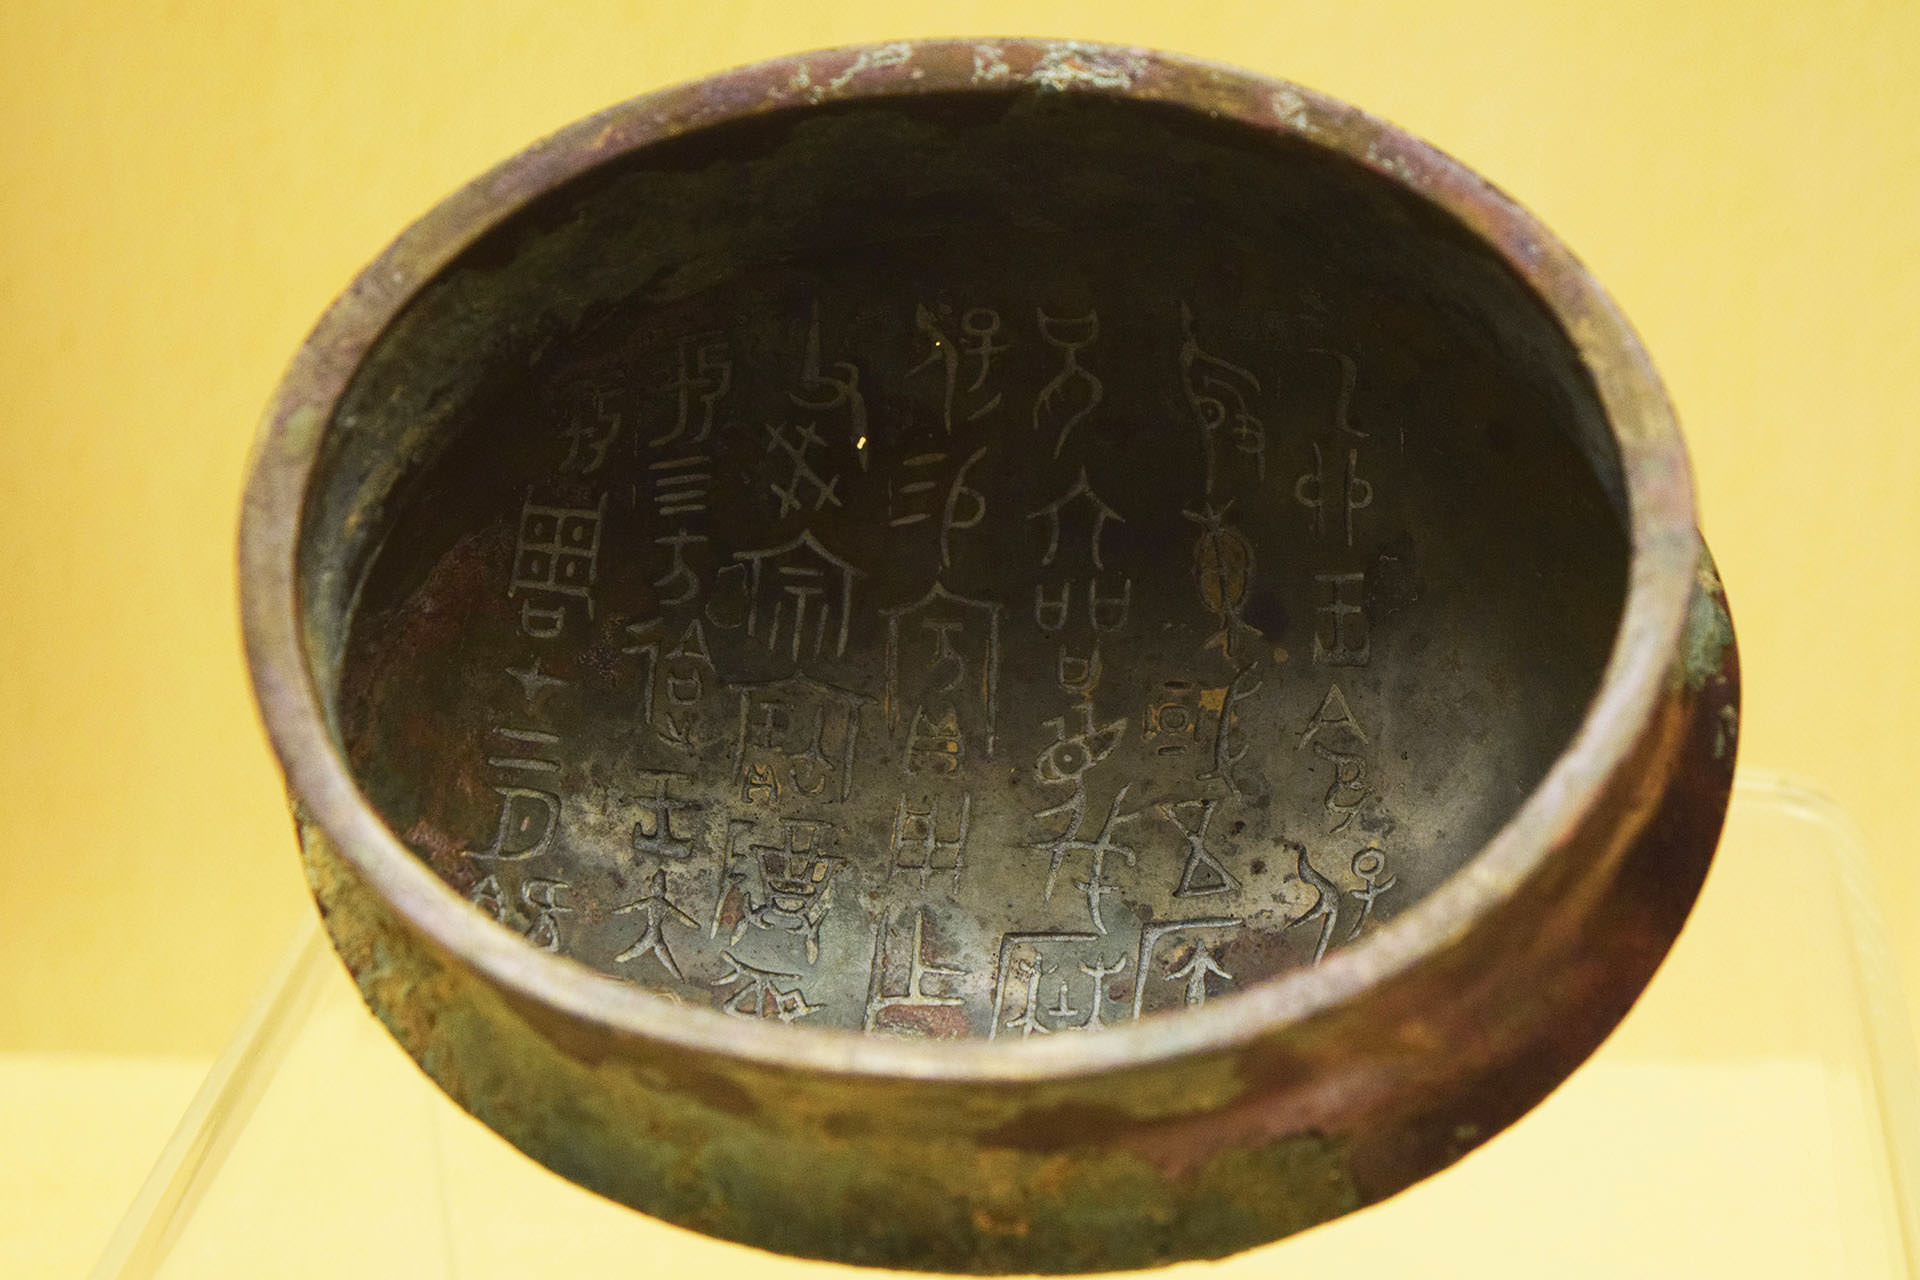 כתובות סיניות עתיקות בתוך כלי ברונזה. שימשו להעברת מסרים לעולם הבא (צילום: טל ניצן)